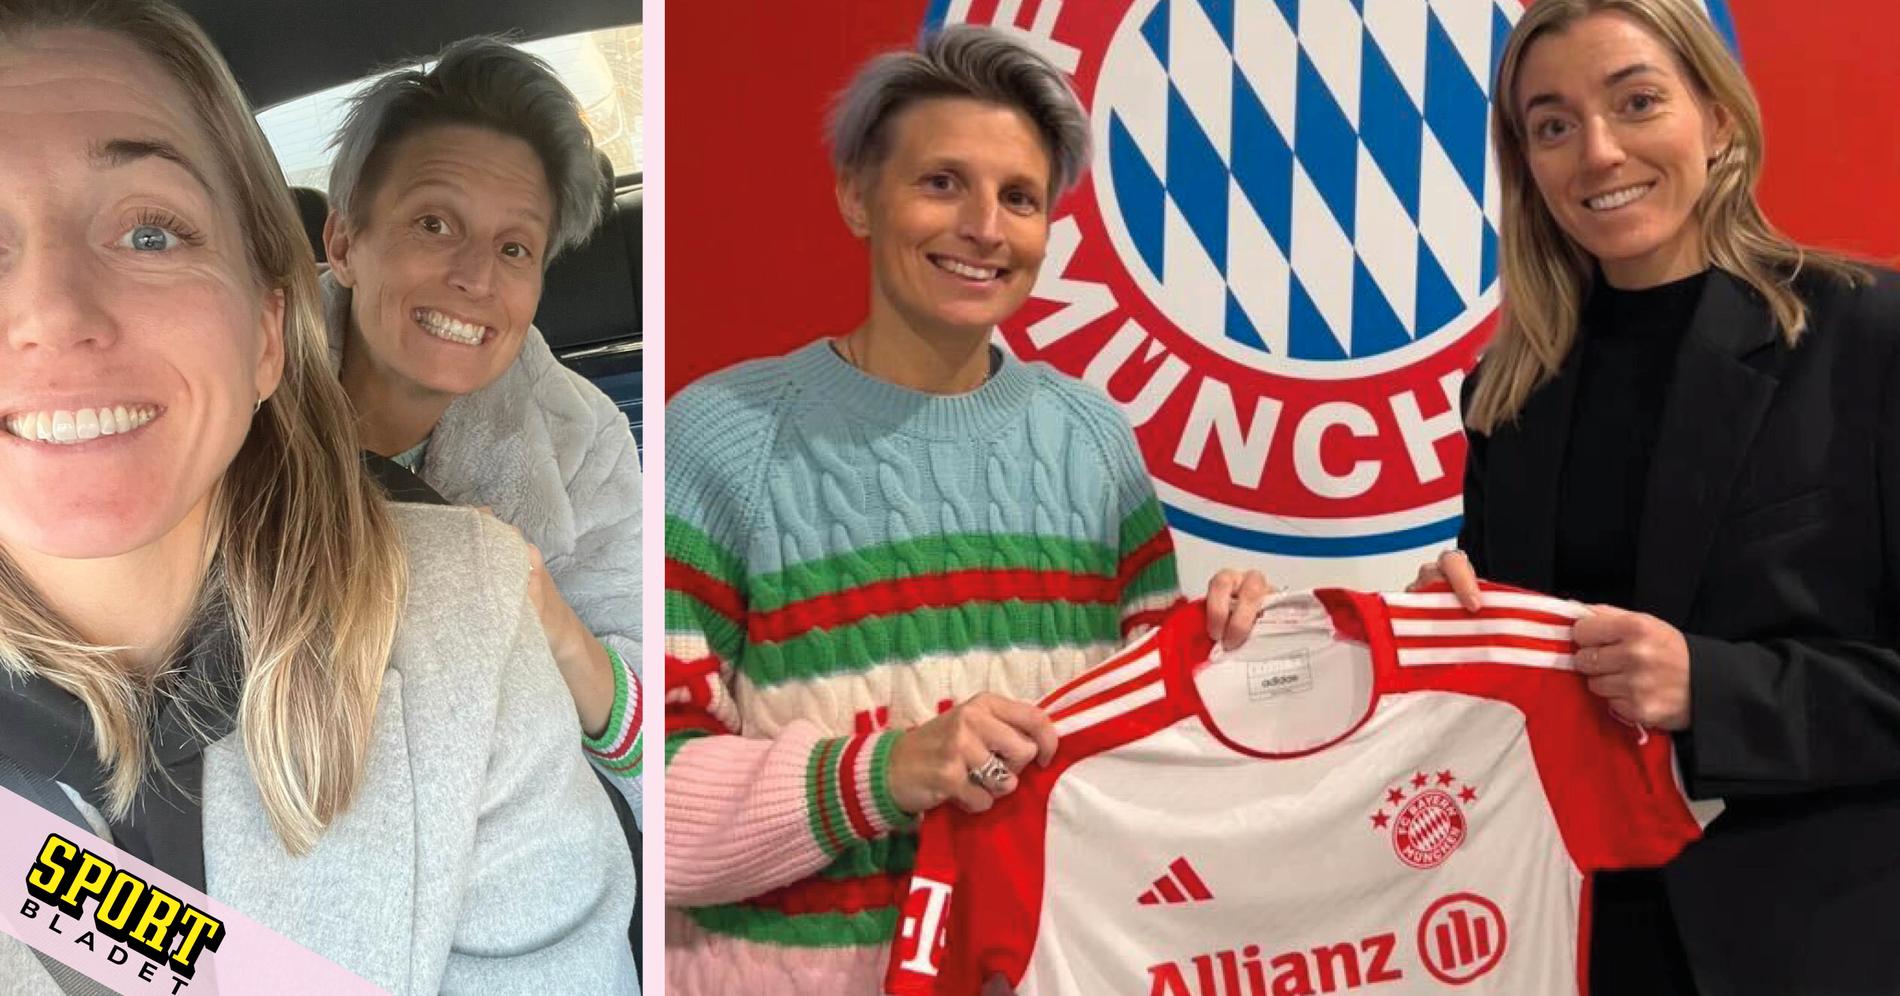 Linda Sembrant über Wechsel zum FC Bayern München: „Aufregend“